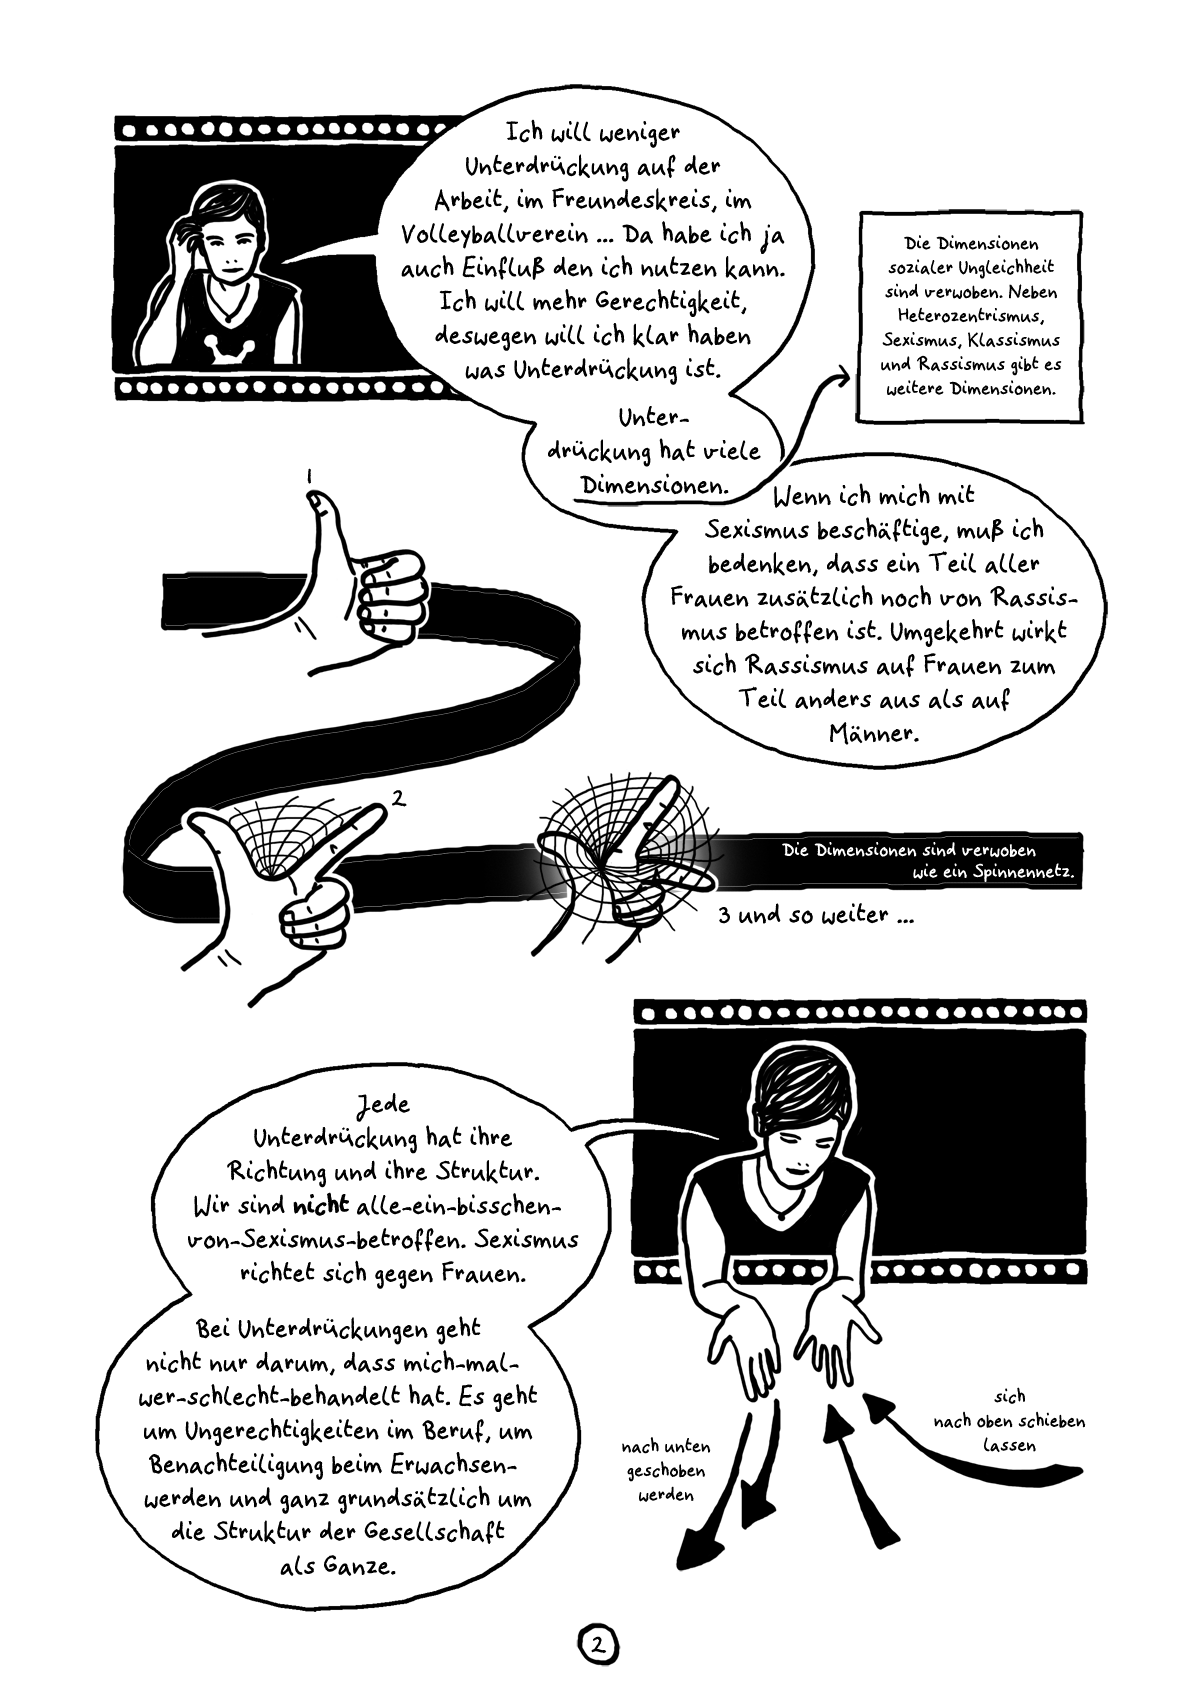 Comiczine Unterdruckarchiv, das ganze Comic wird im folgenden in reinen Text transkribiert